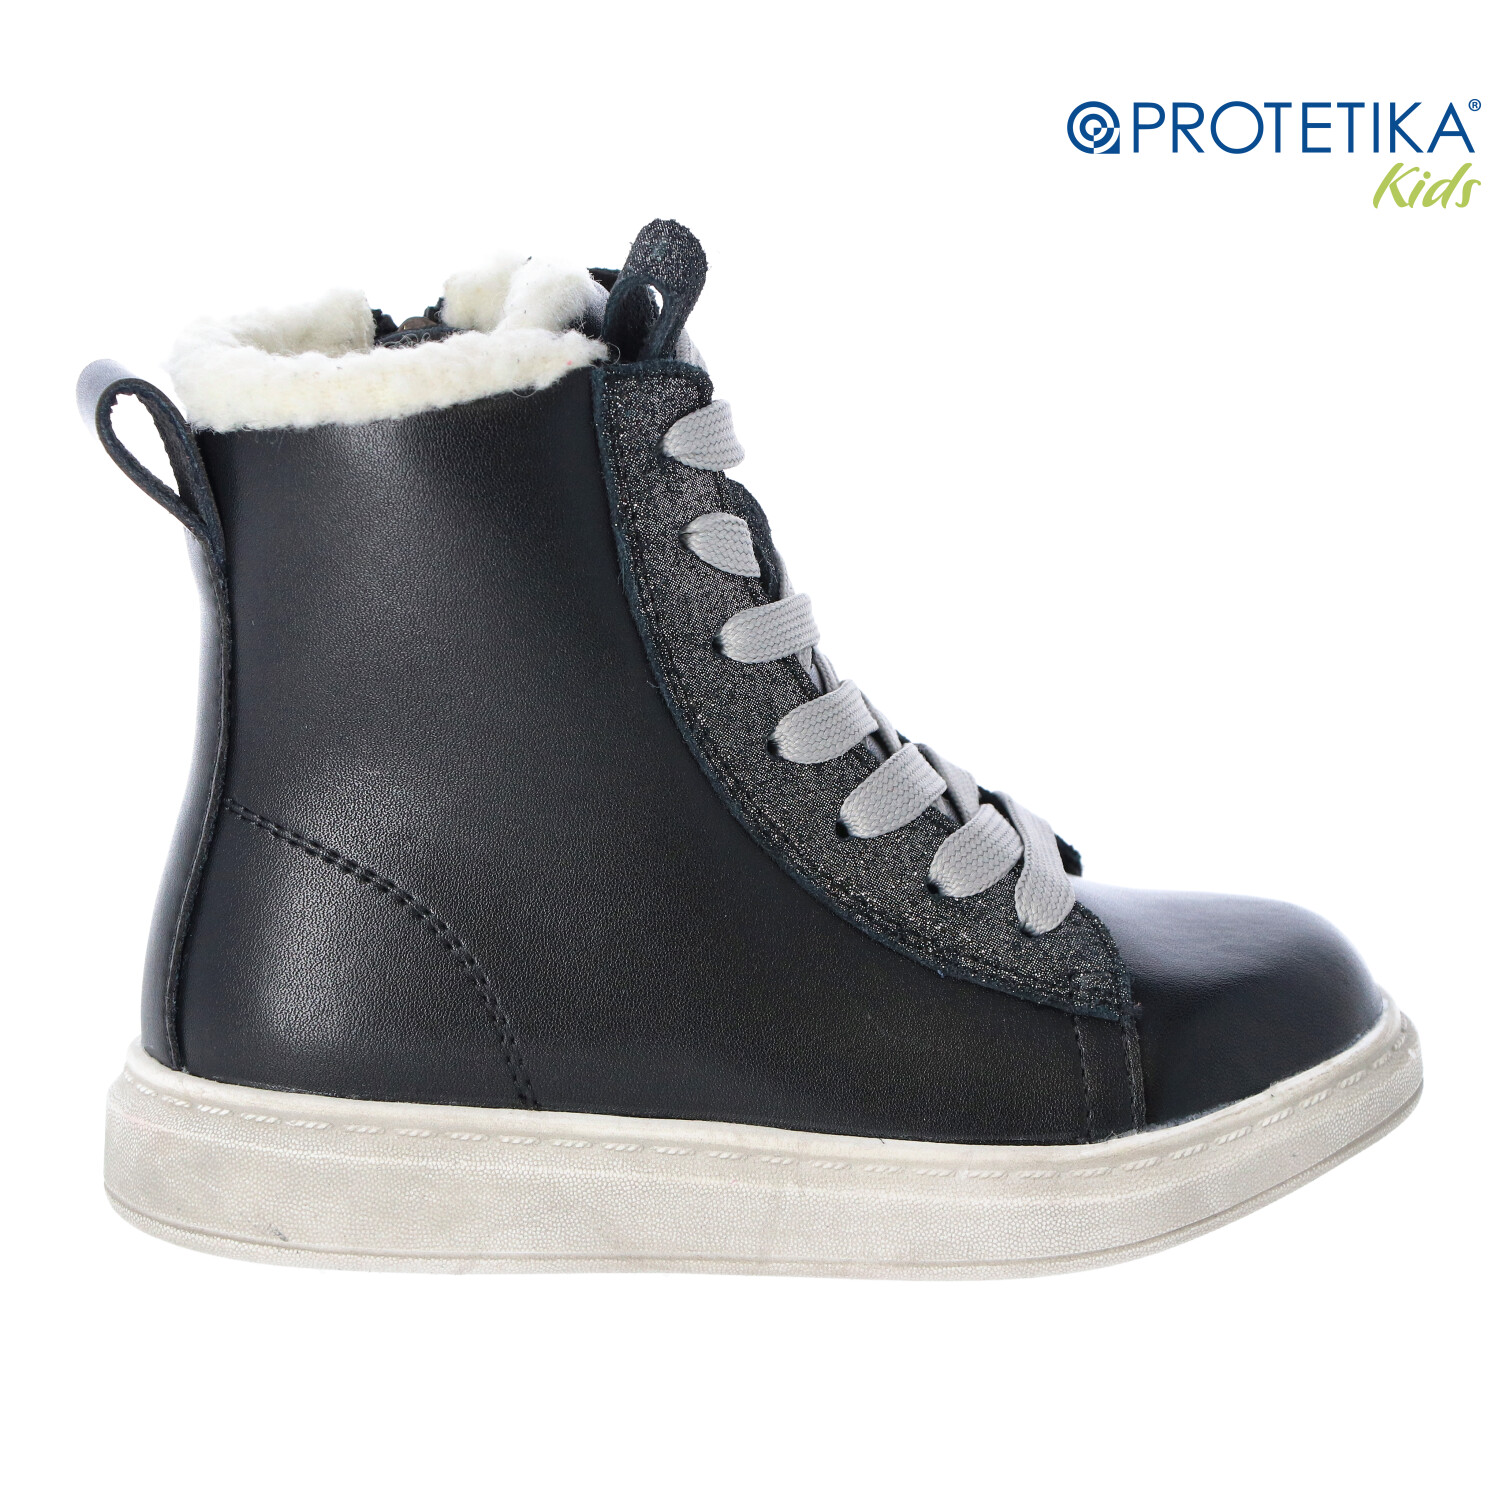 Protetika - zimné topánky s kožušinkou AJKA black